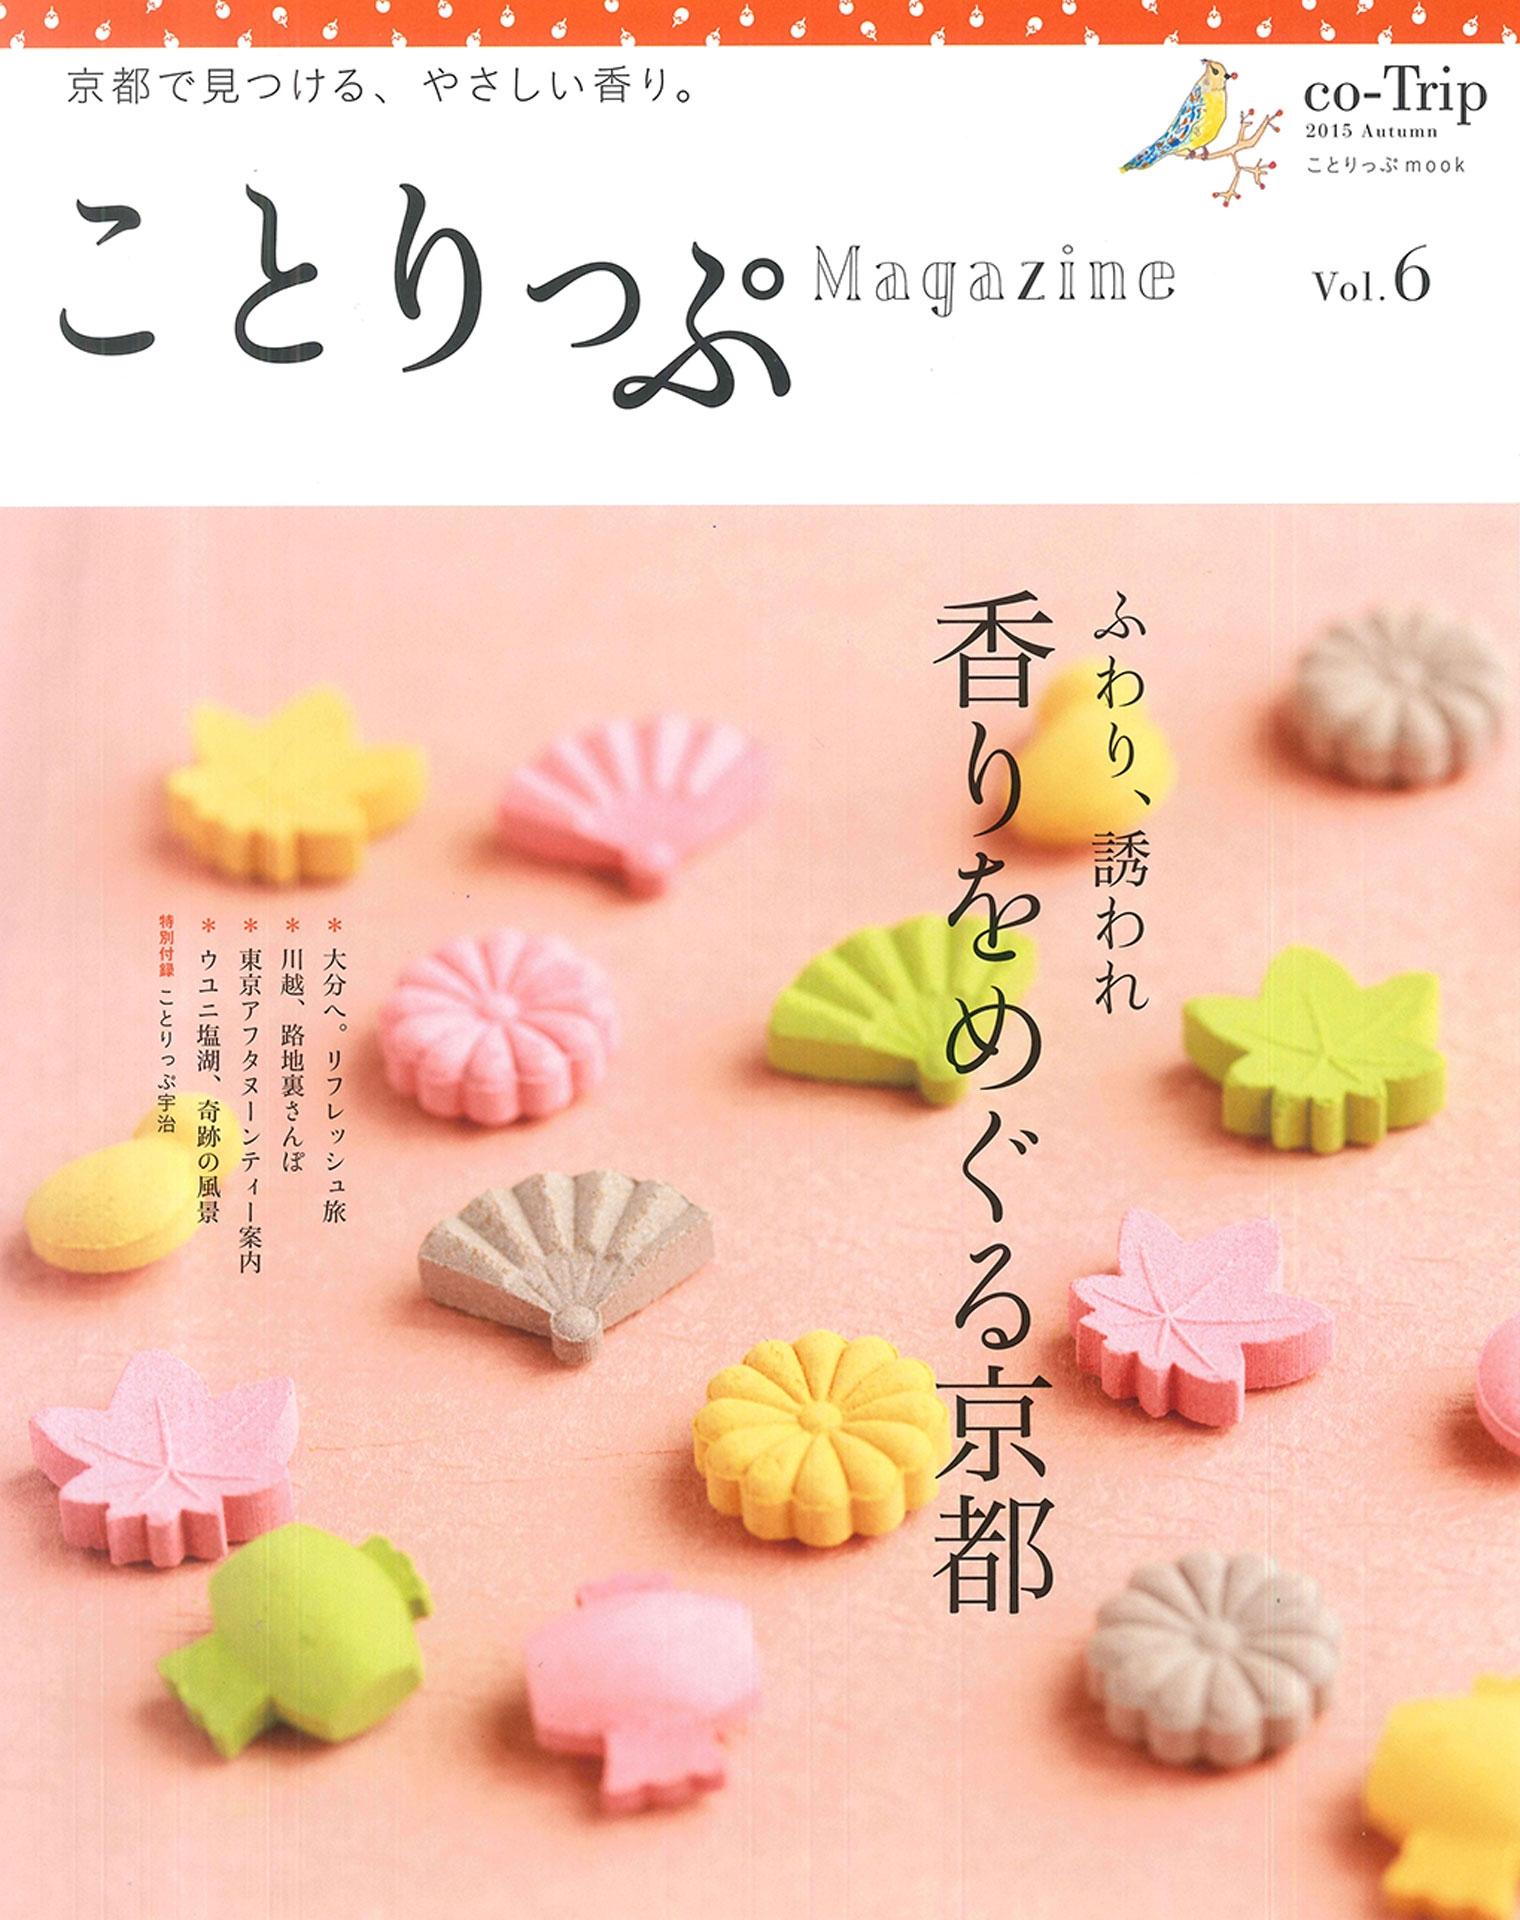 ことりっぷマガジン vol.6 2015秋